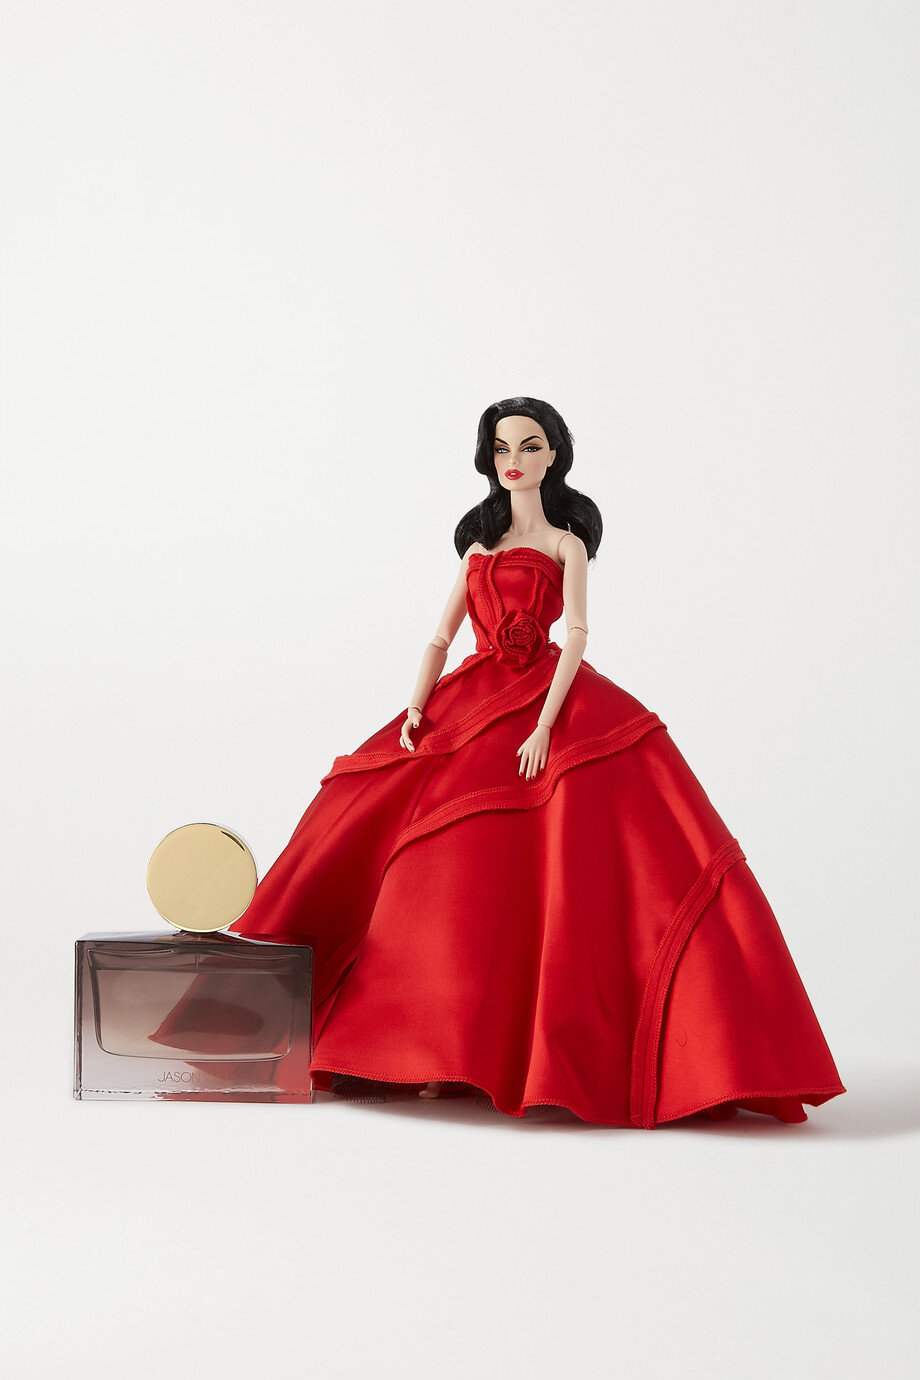 Velvet Rouge Vanessa Perrin doll and fragrance from the NET-A-PORTER website